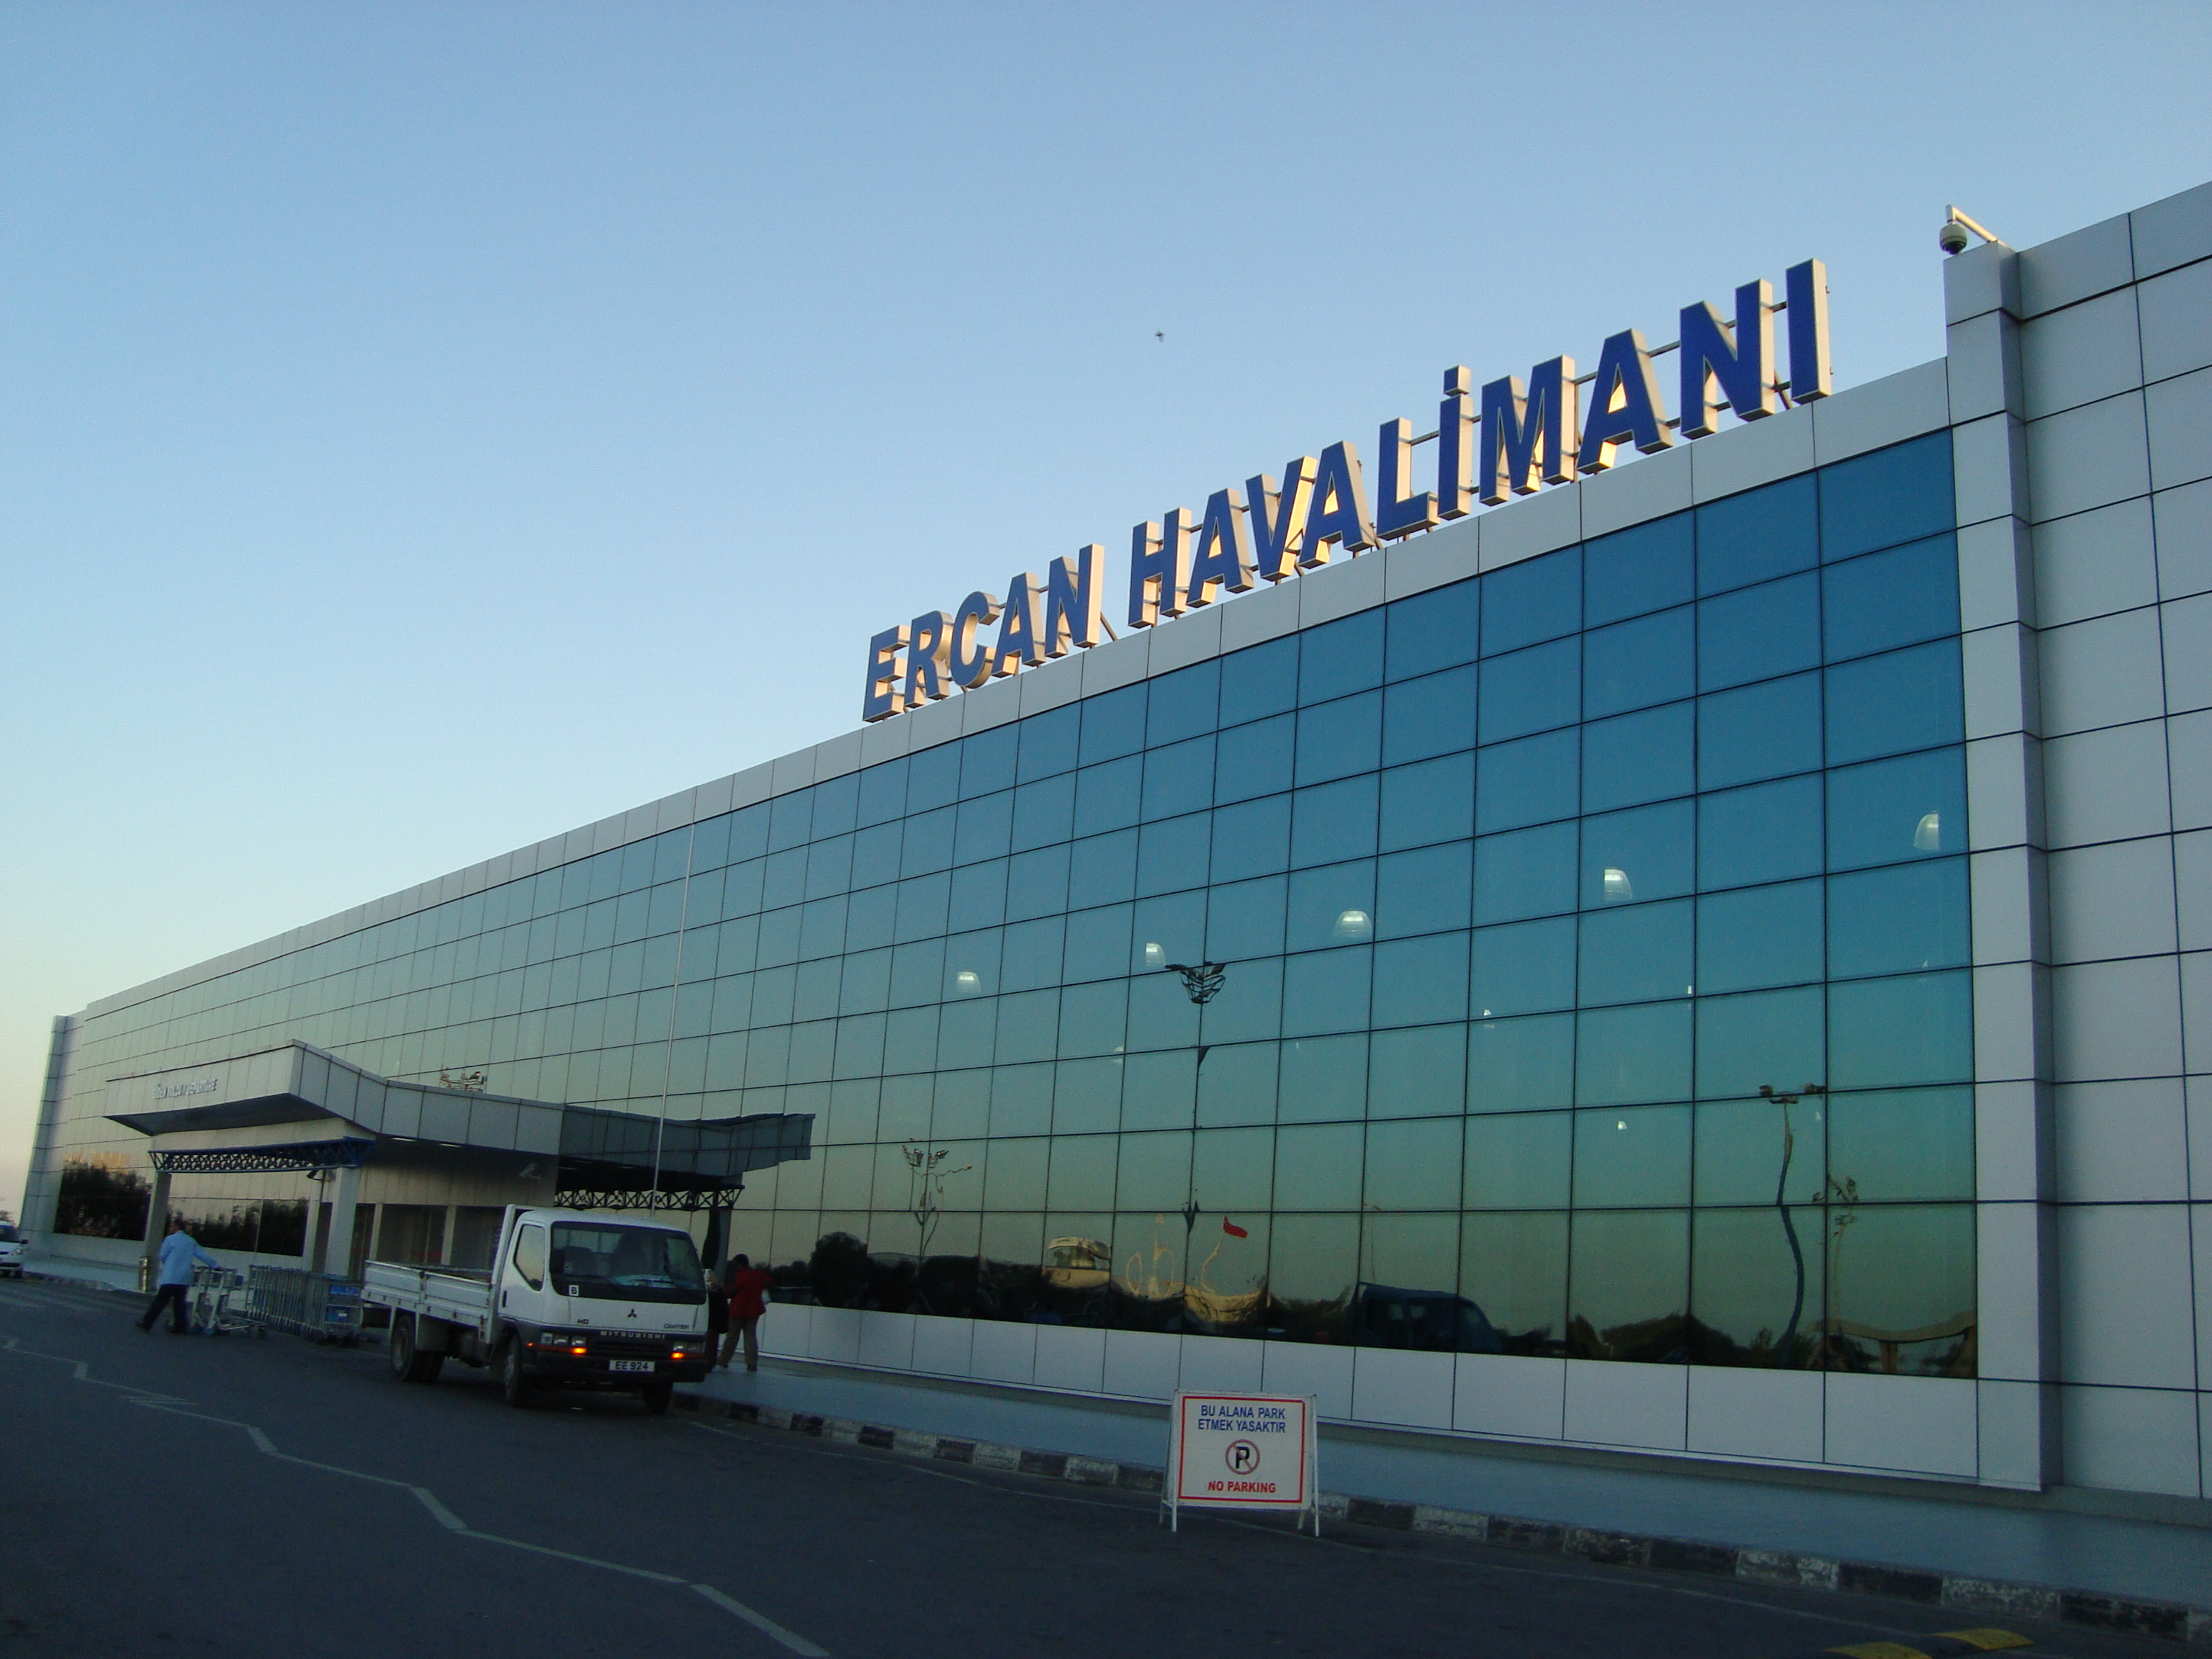 Ercan Havaalanında Bugün Eylem Var